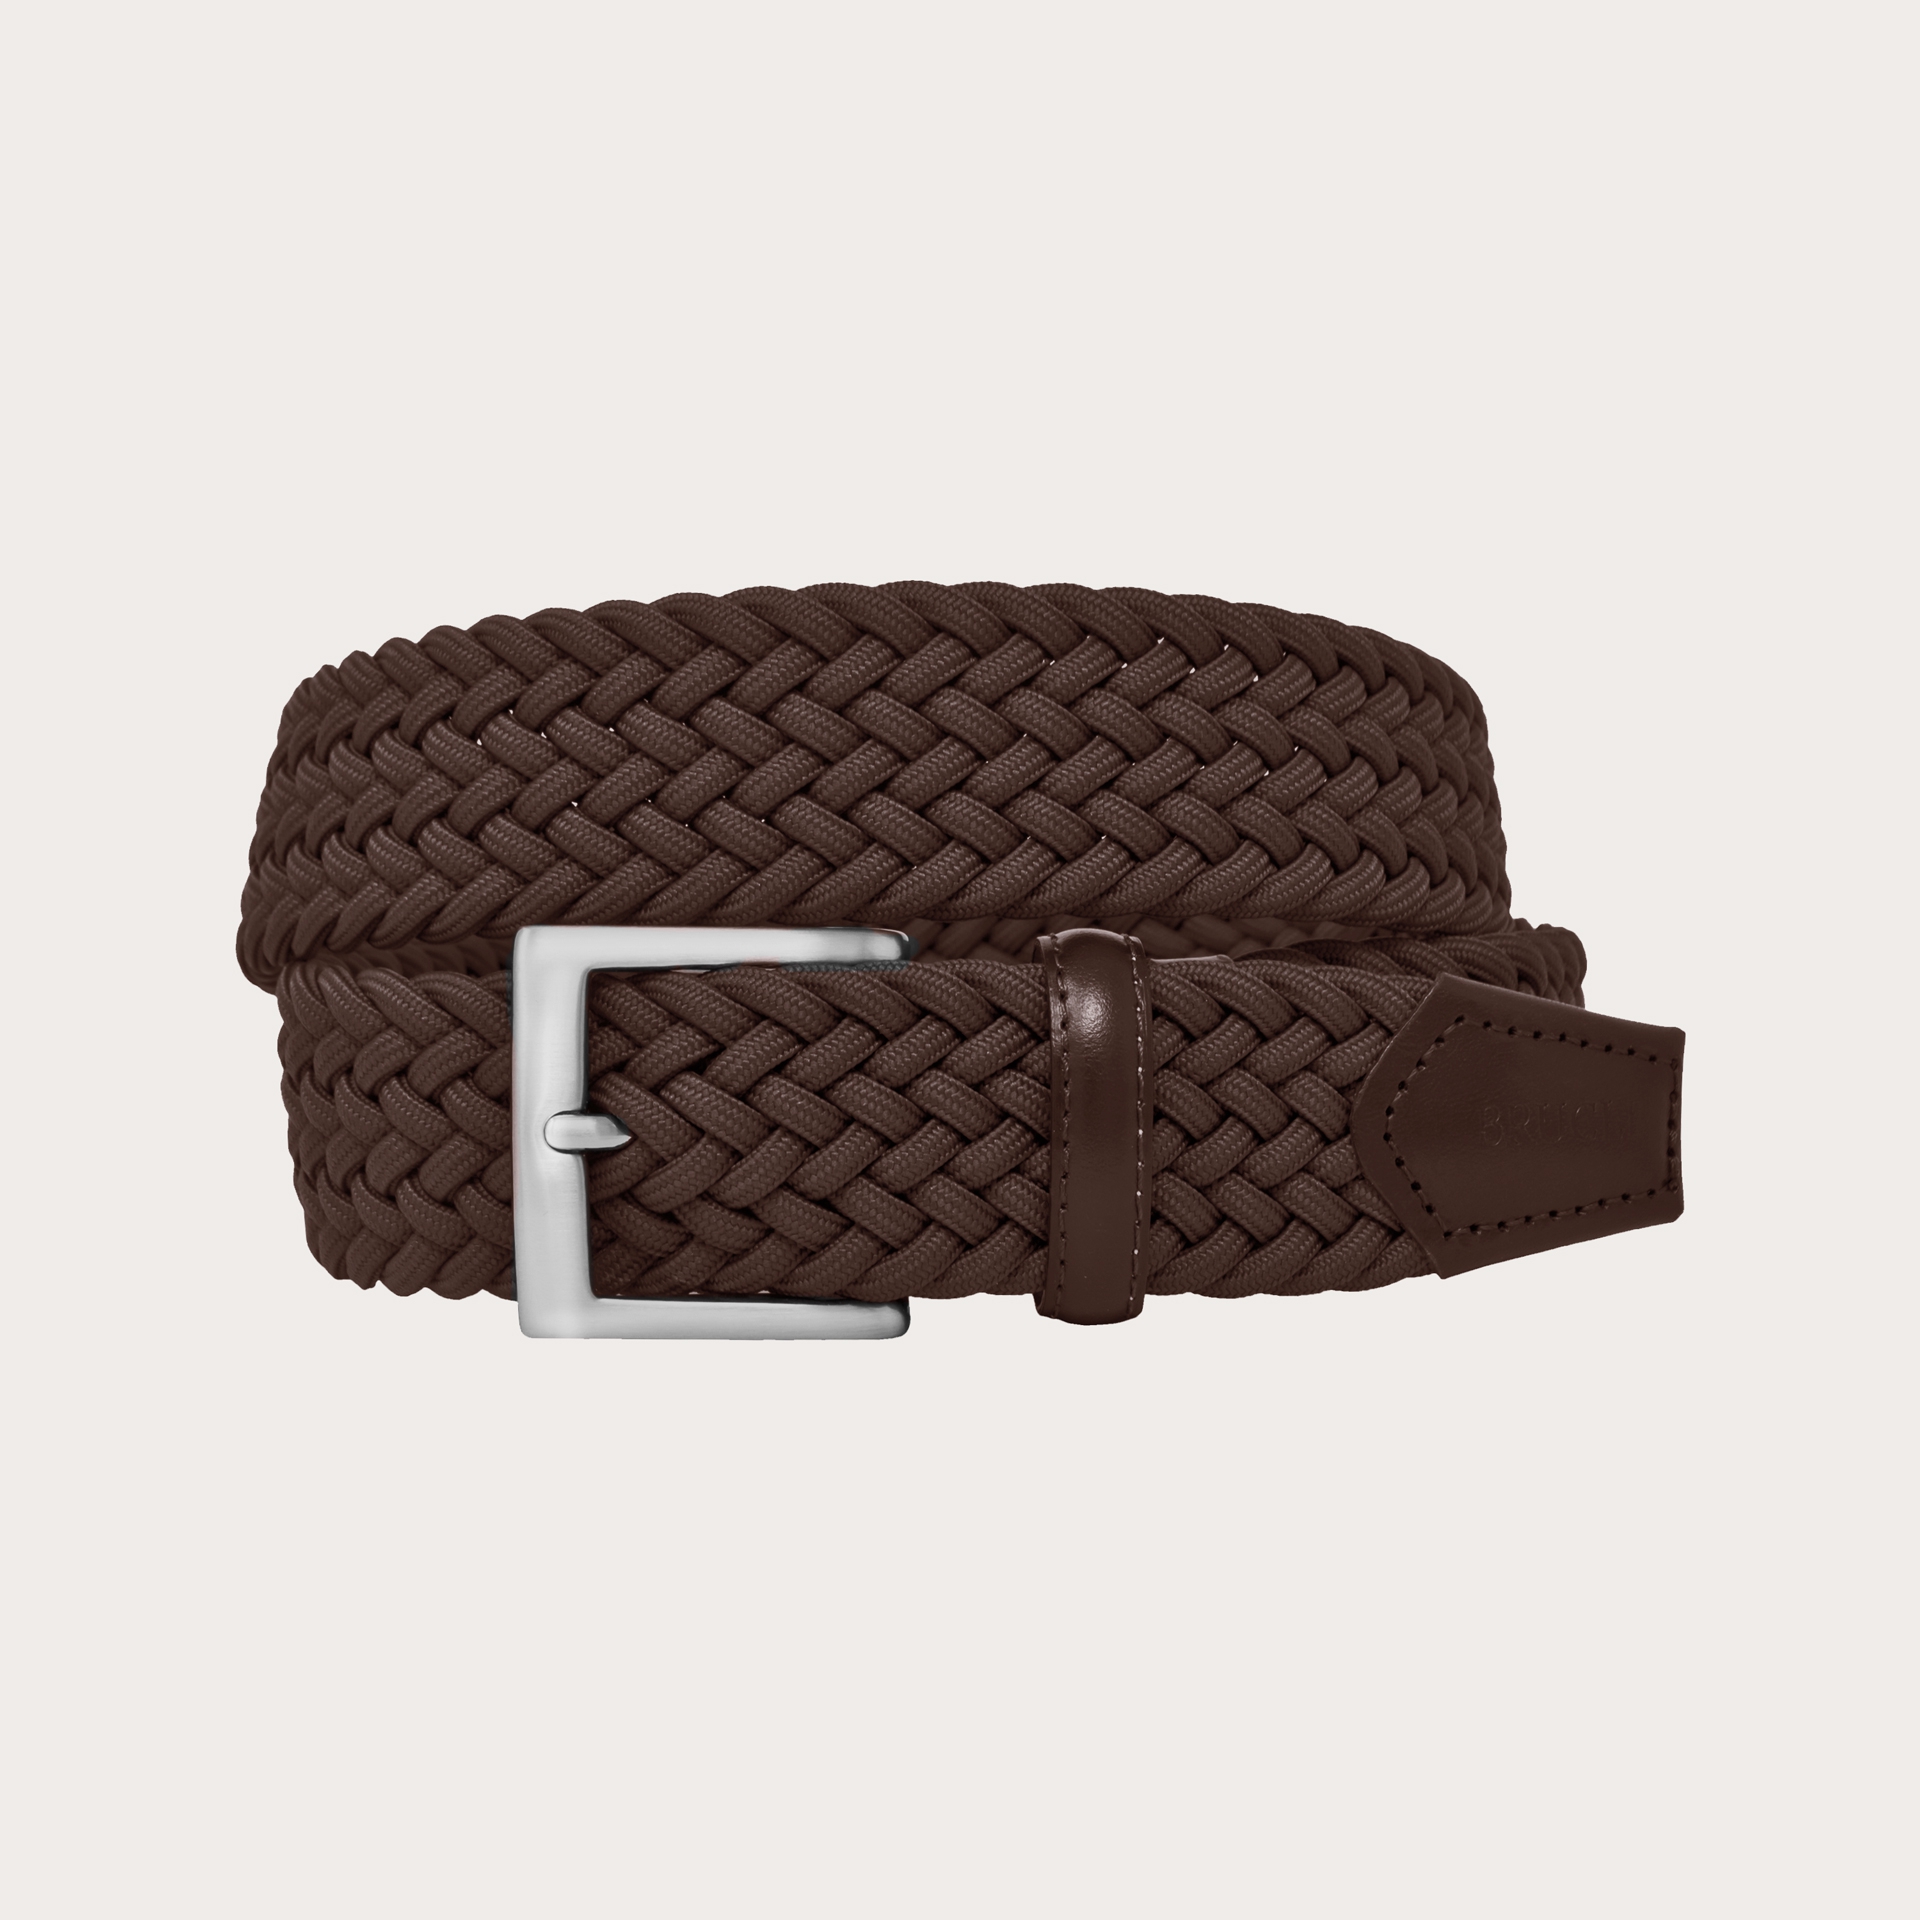 Braided elastic stretch belt, brown